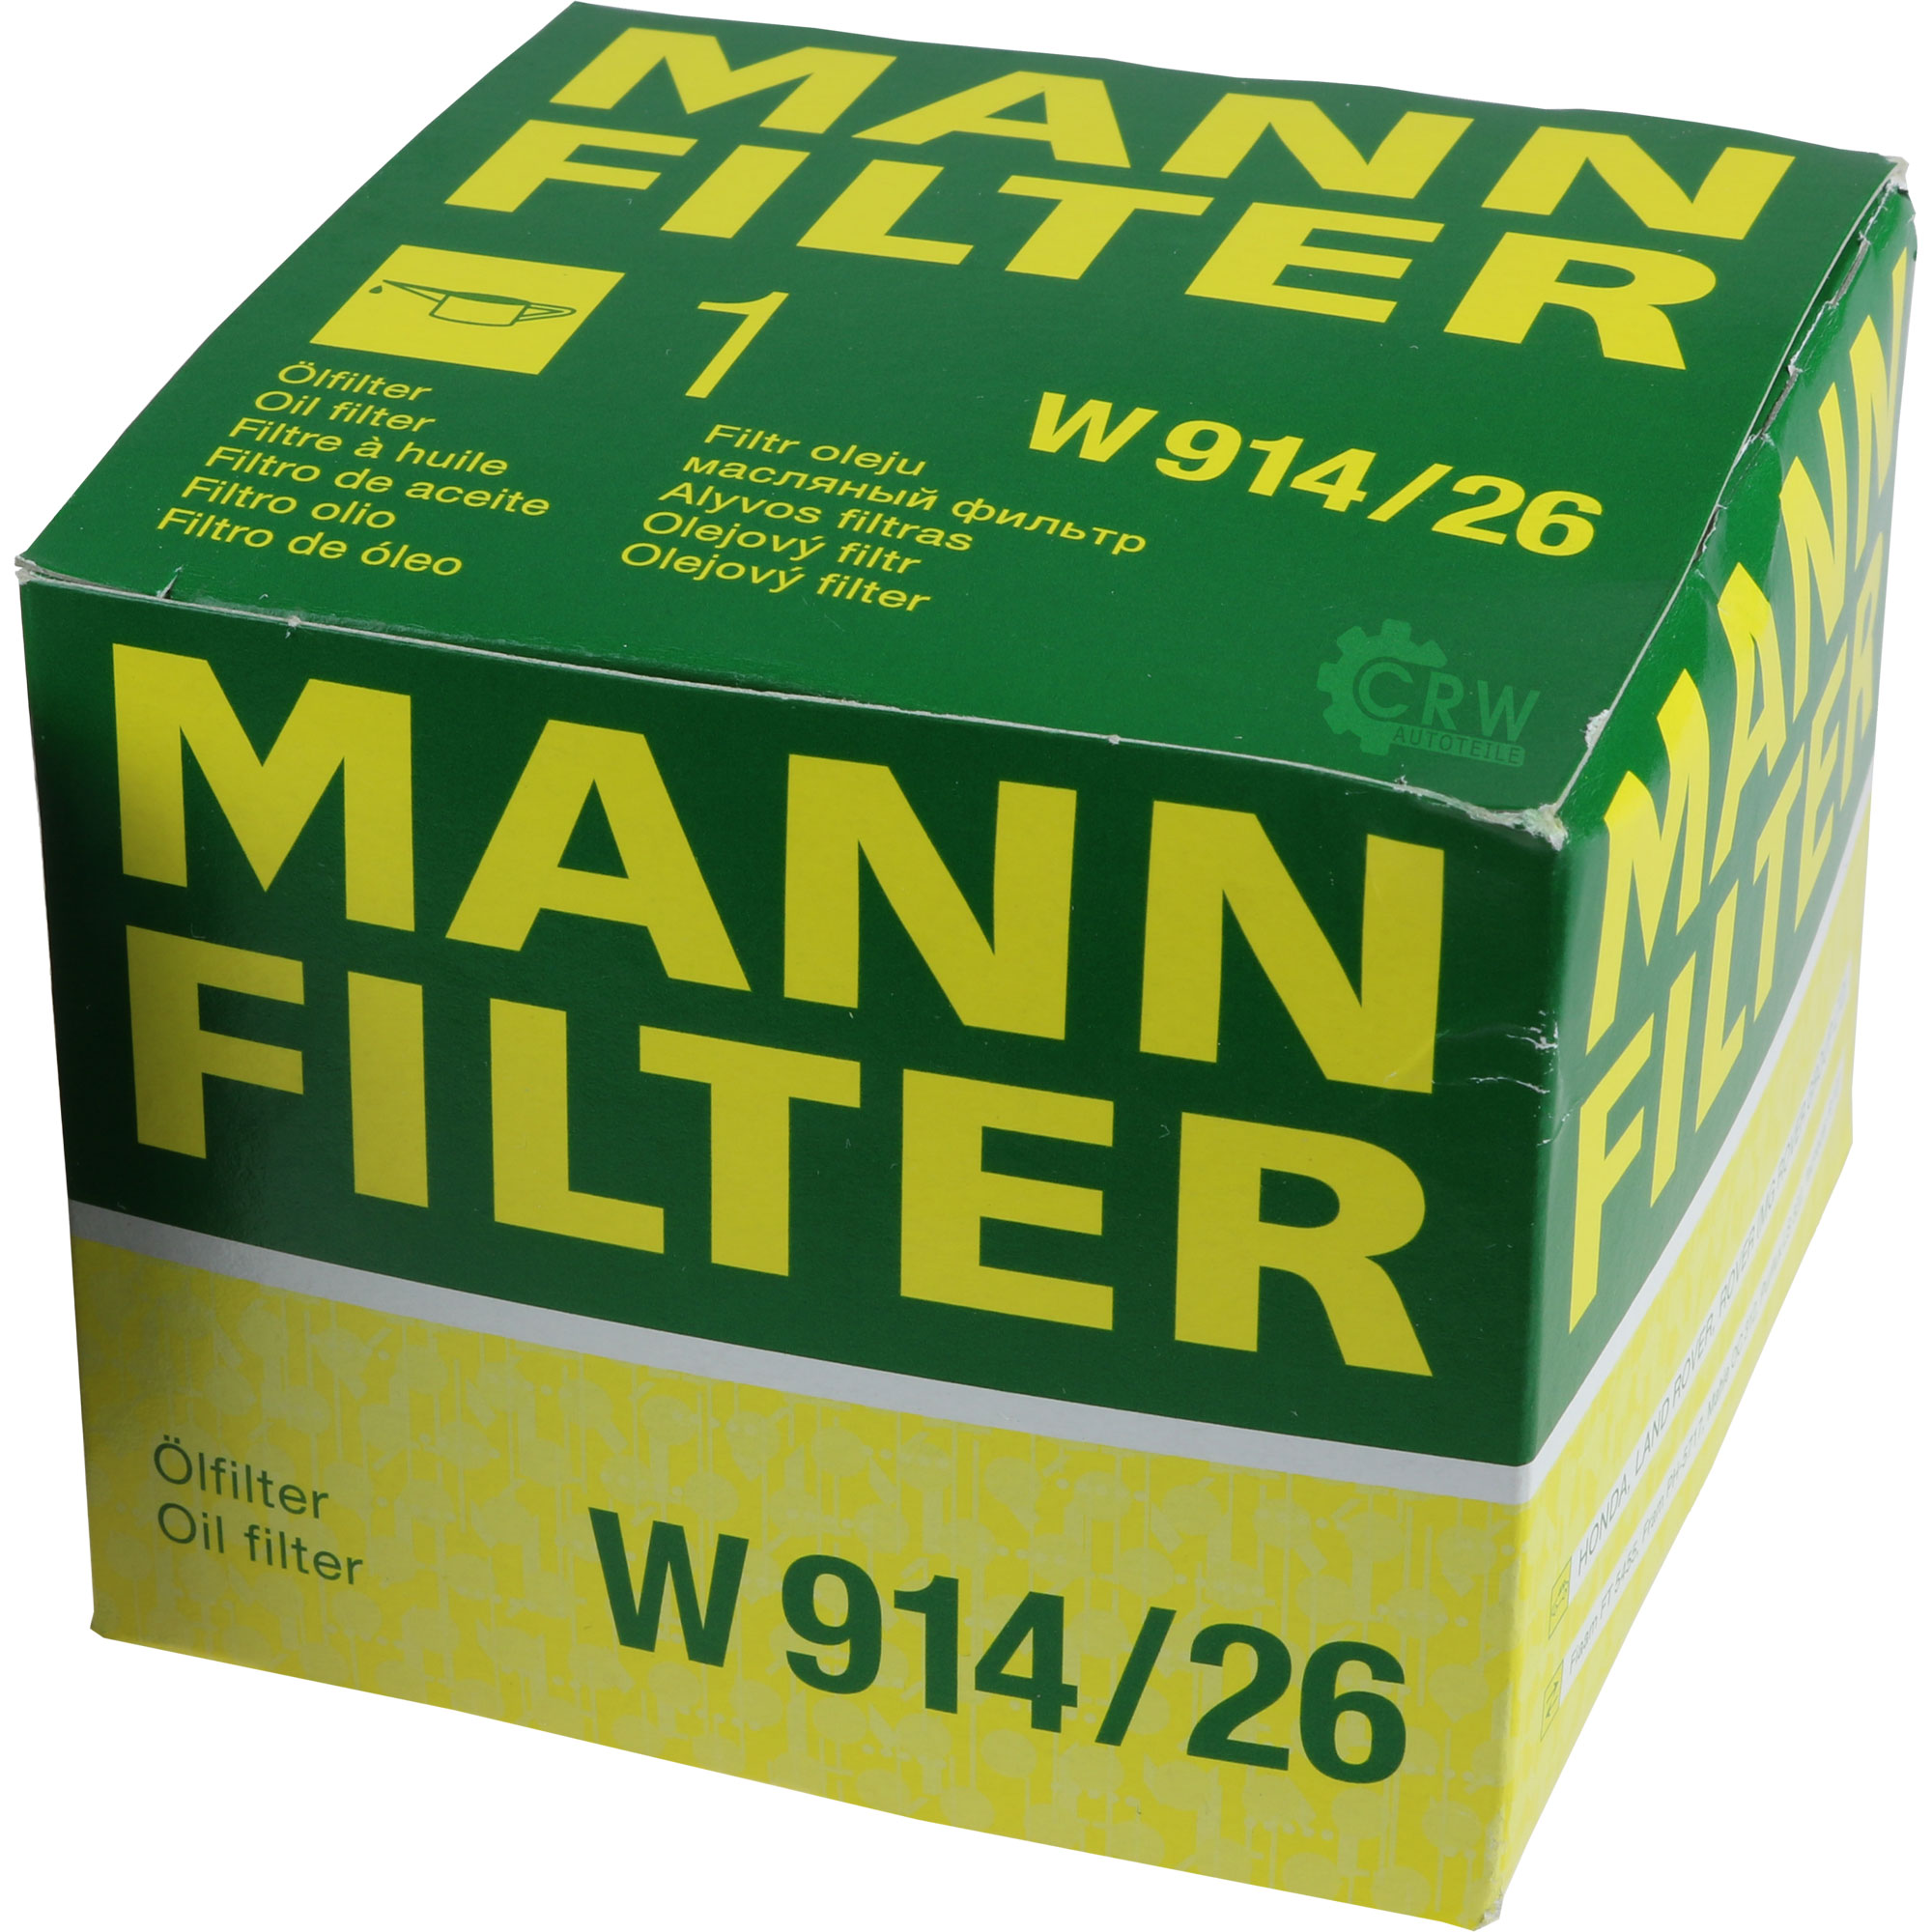 MANN-FILTER Ölfilter W 914/26 Oil Filter